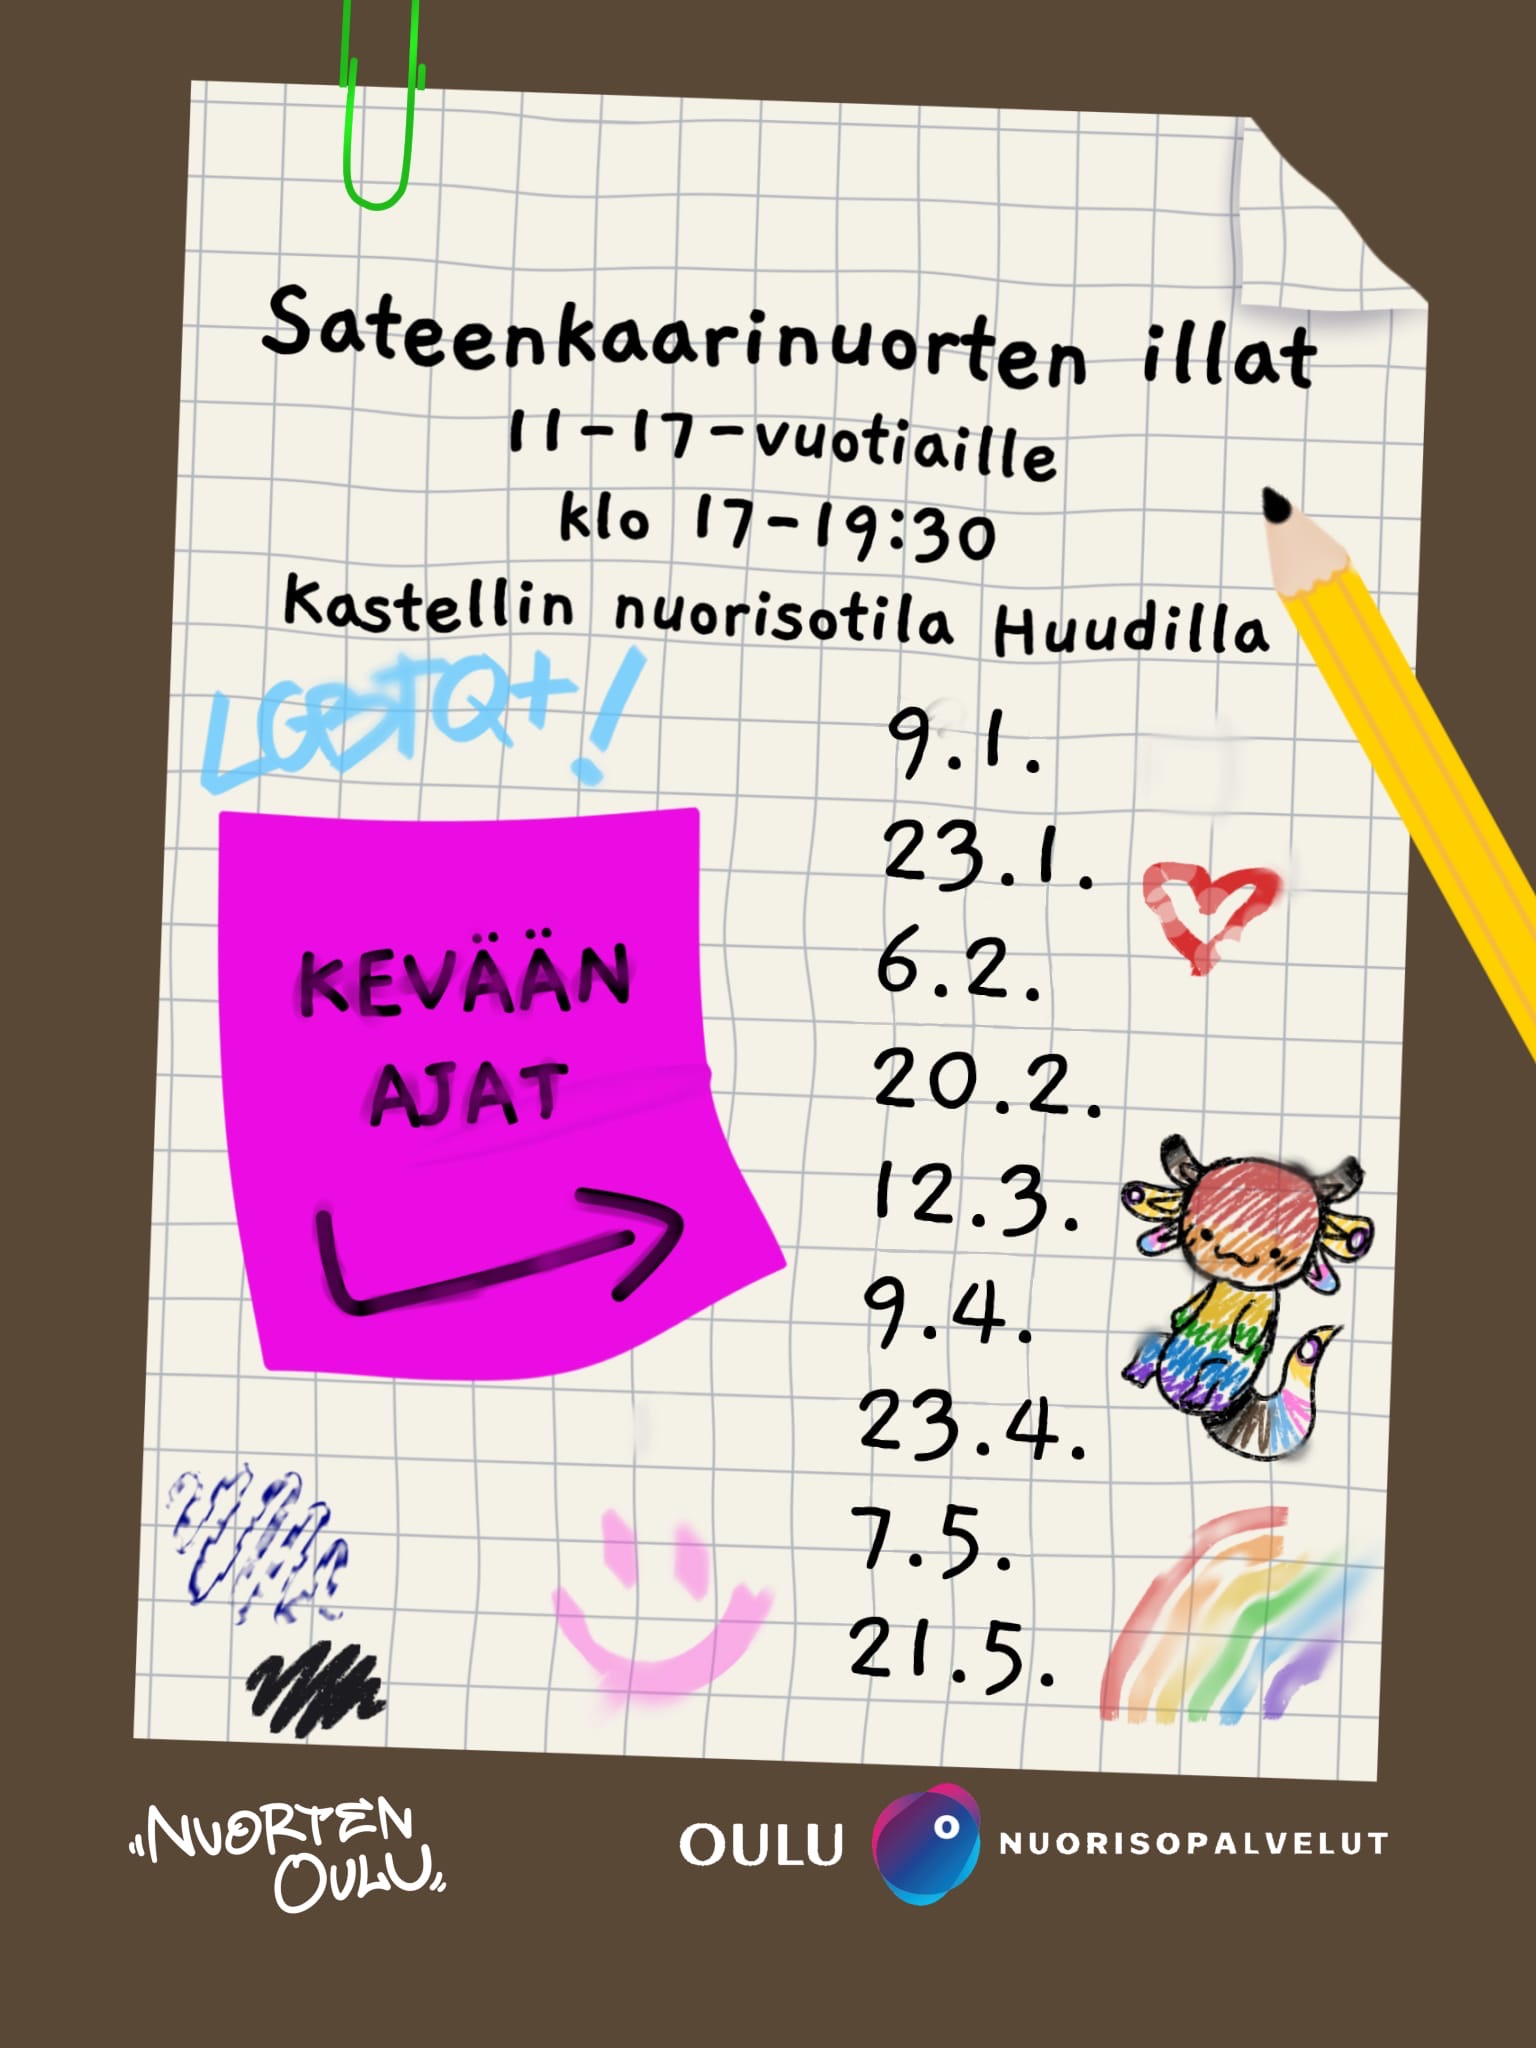 Mainos sateenkaarinuorten illoista Kastellin nuorisotalo Huudissa.